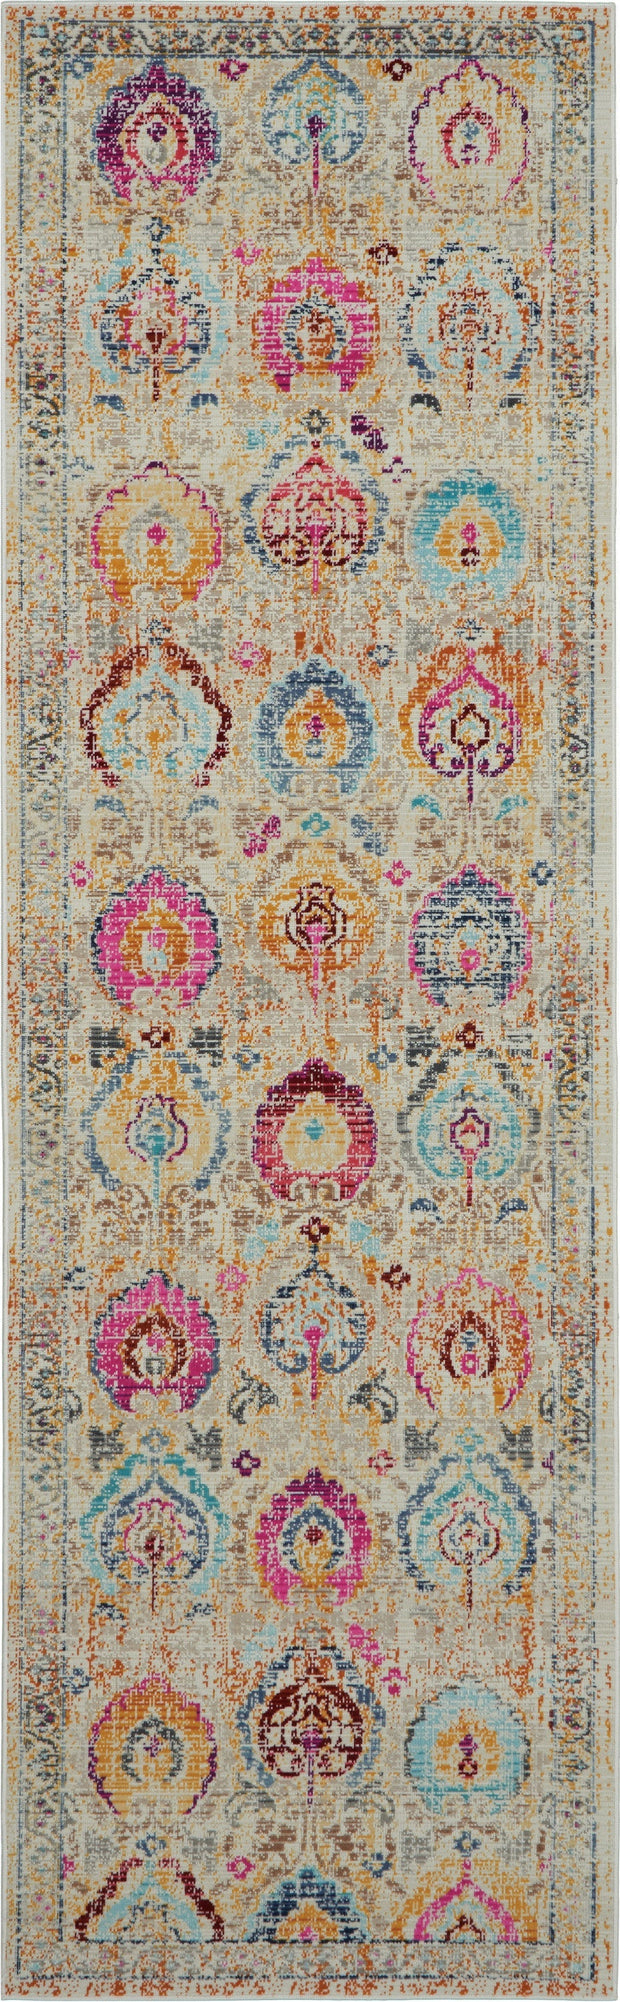 vintage kashan ivory multicolor rug by nourison 99446455628 redo 3